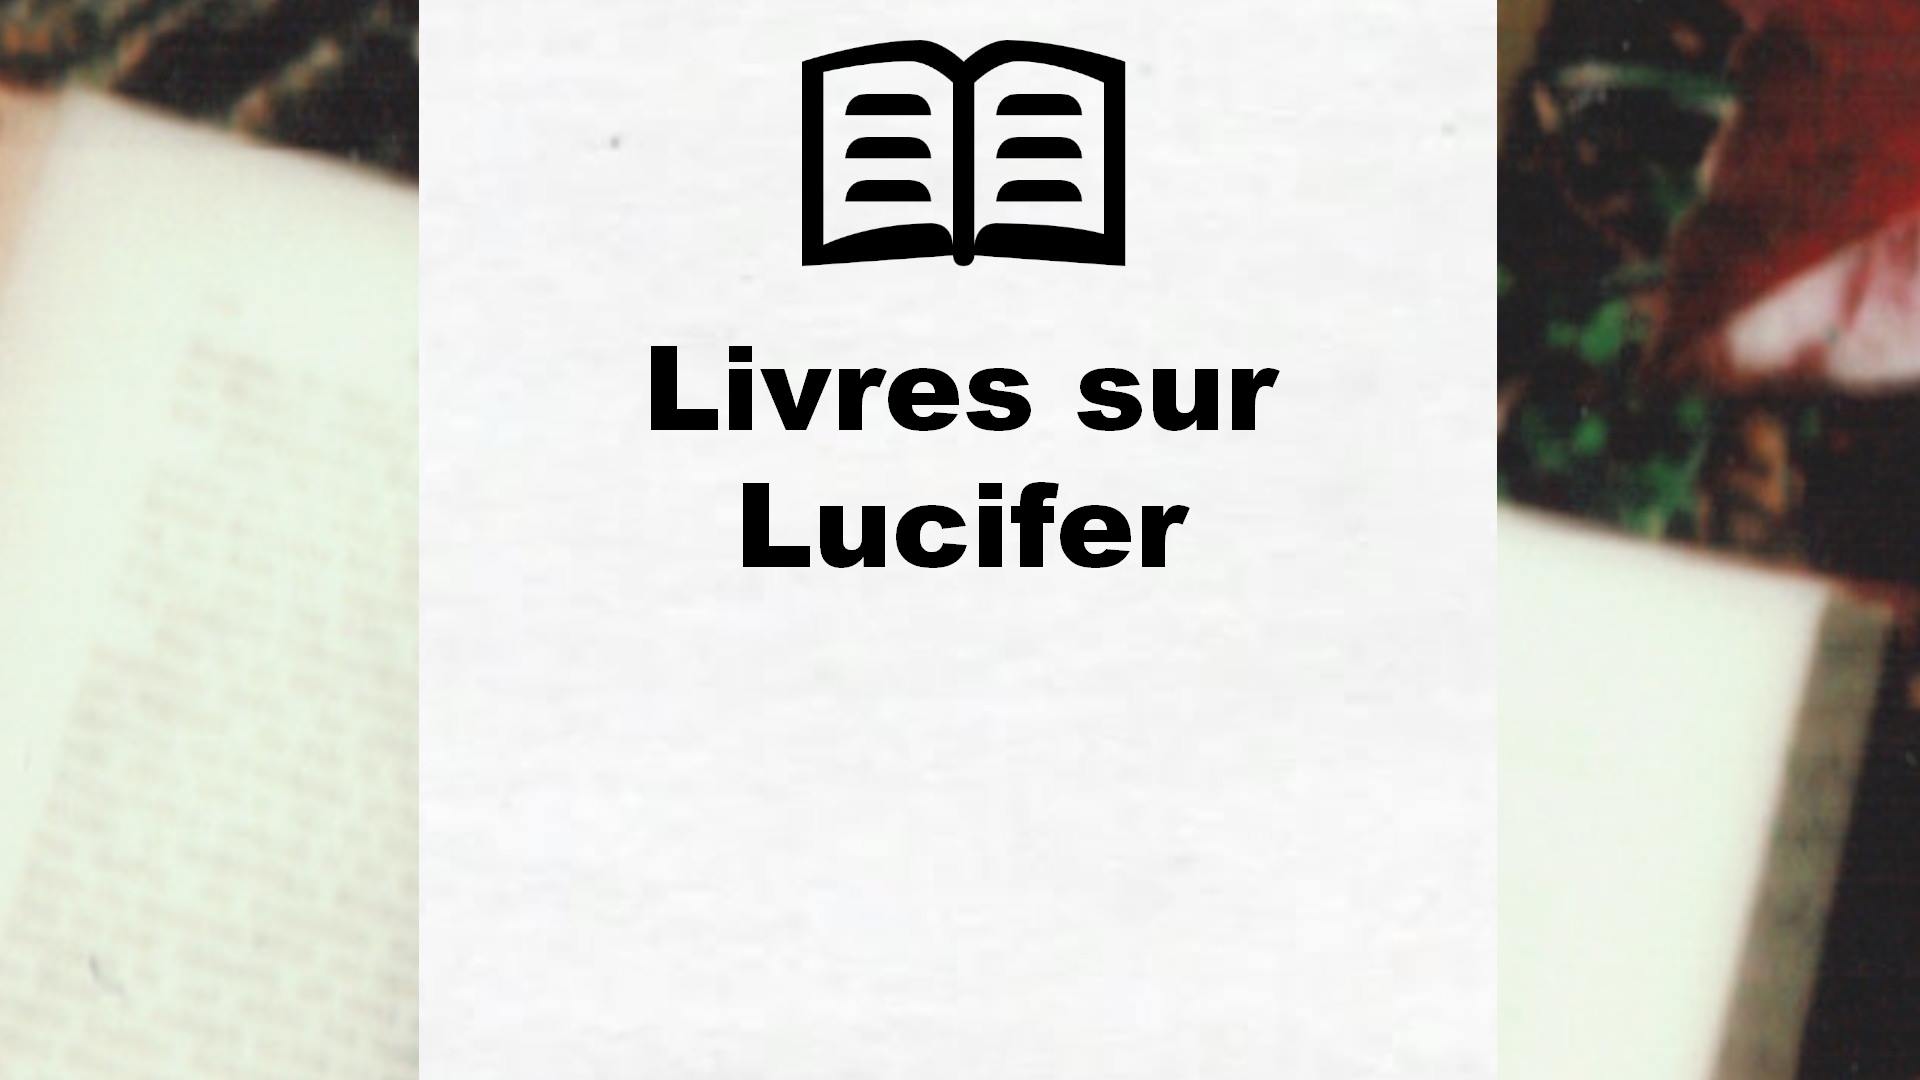 Livres sur Lucifer